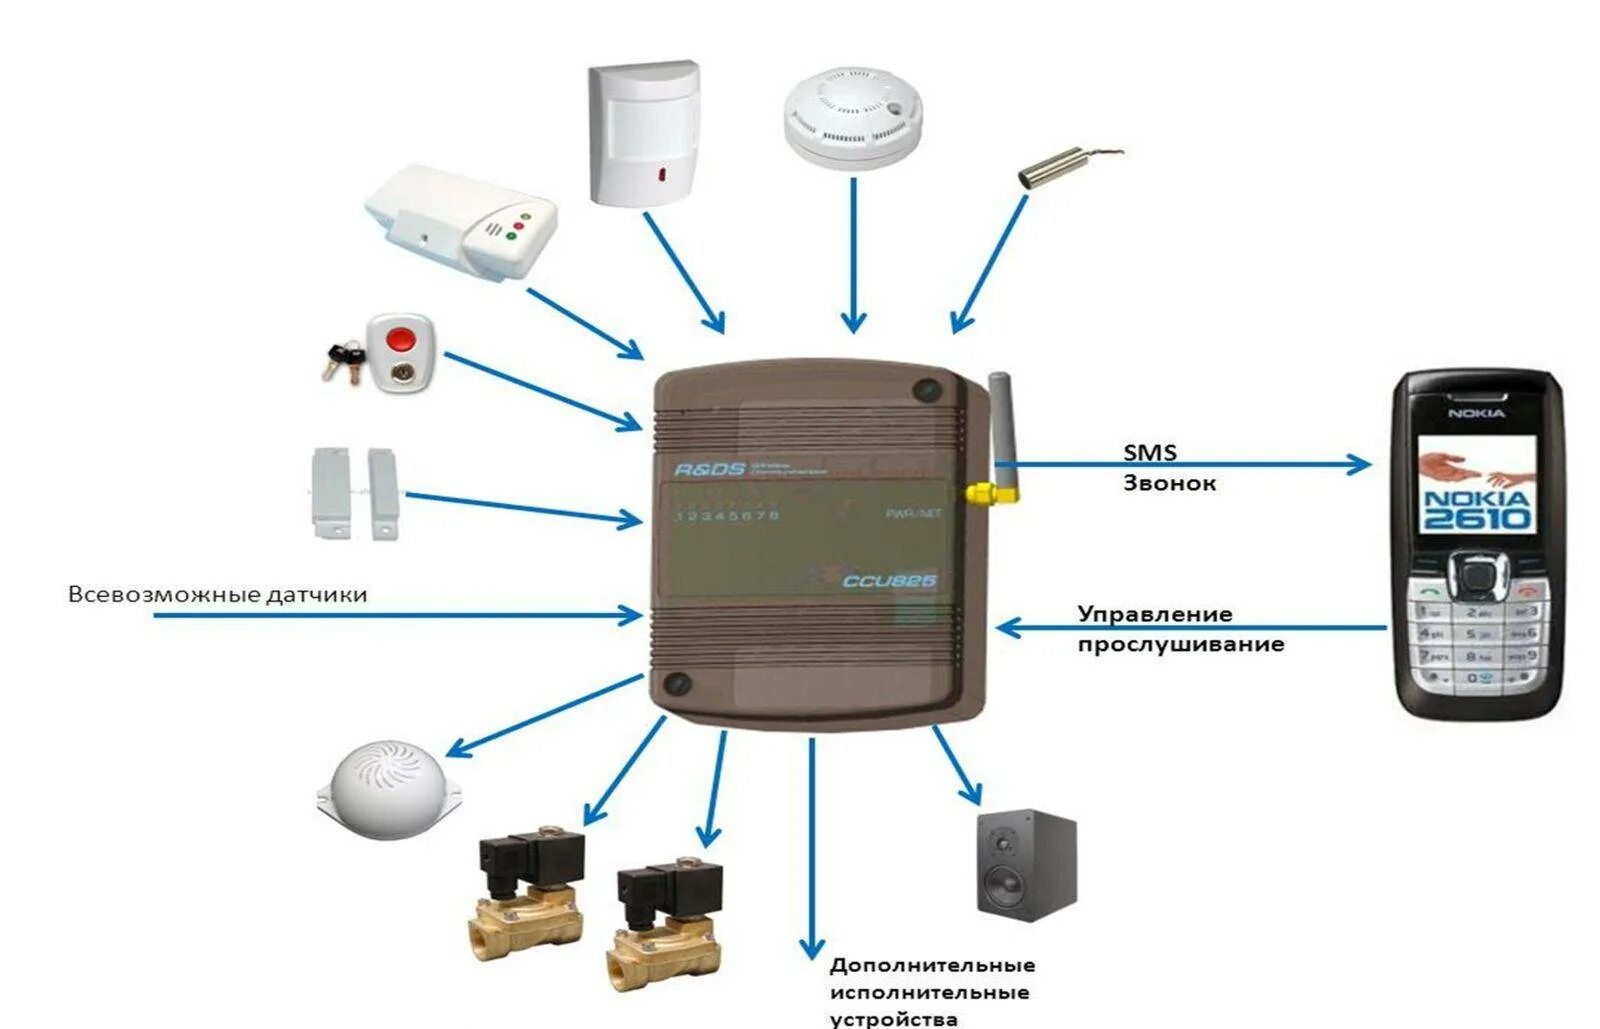 Автономная gsm. Схема охранной сигнализации с GSM датчиком. GSM модуль для сигнализации. Автономная охранная сигнализация GSM. Схема работы автономная охранная сигнализация GSM.